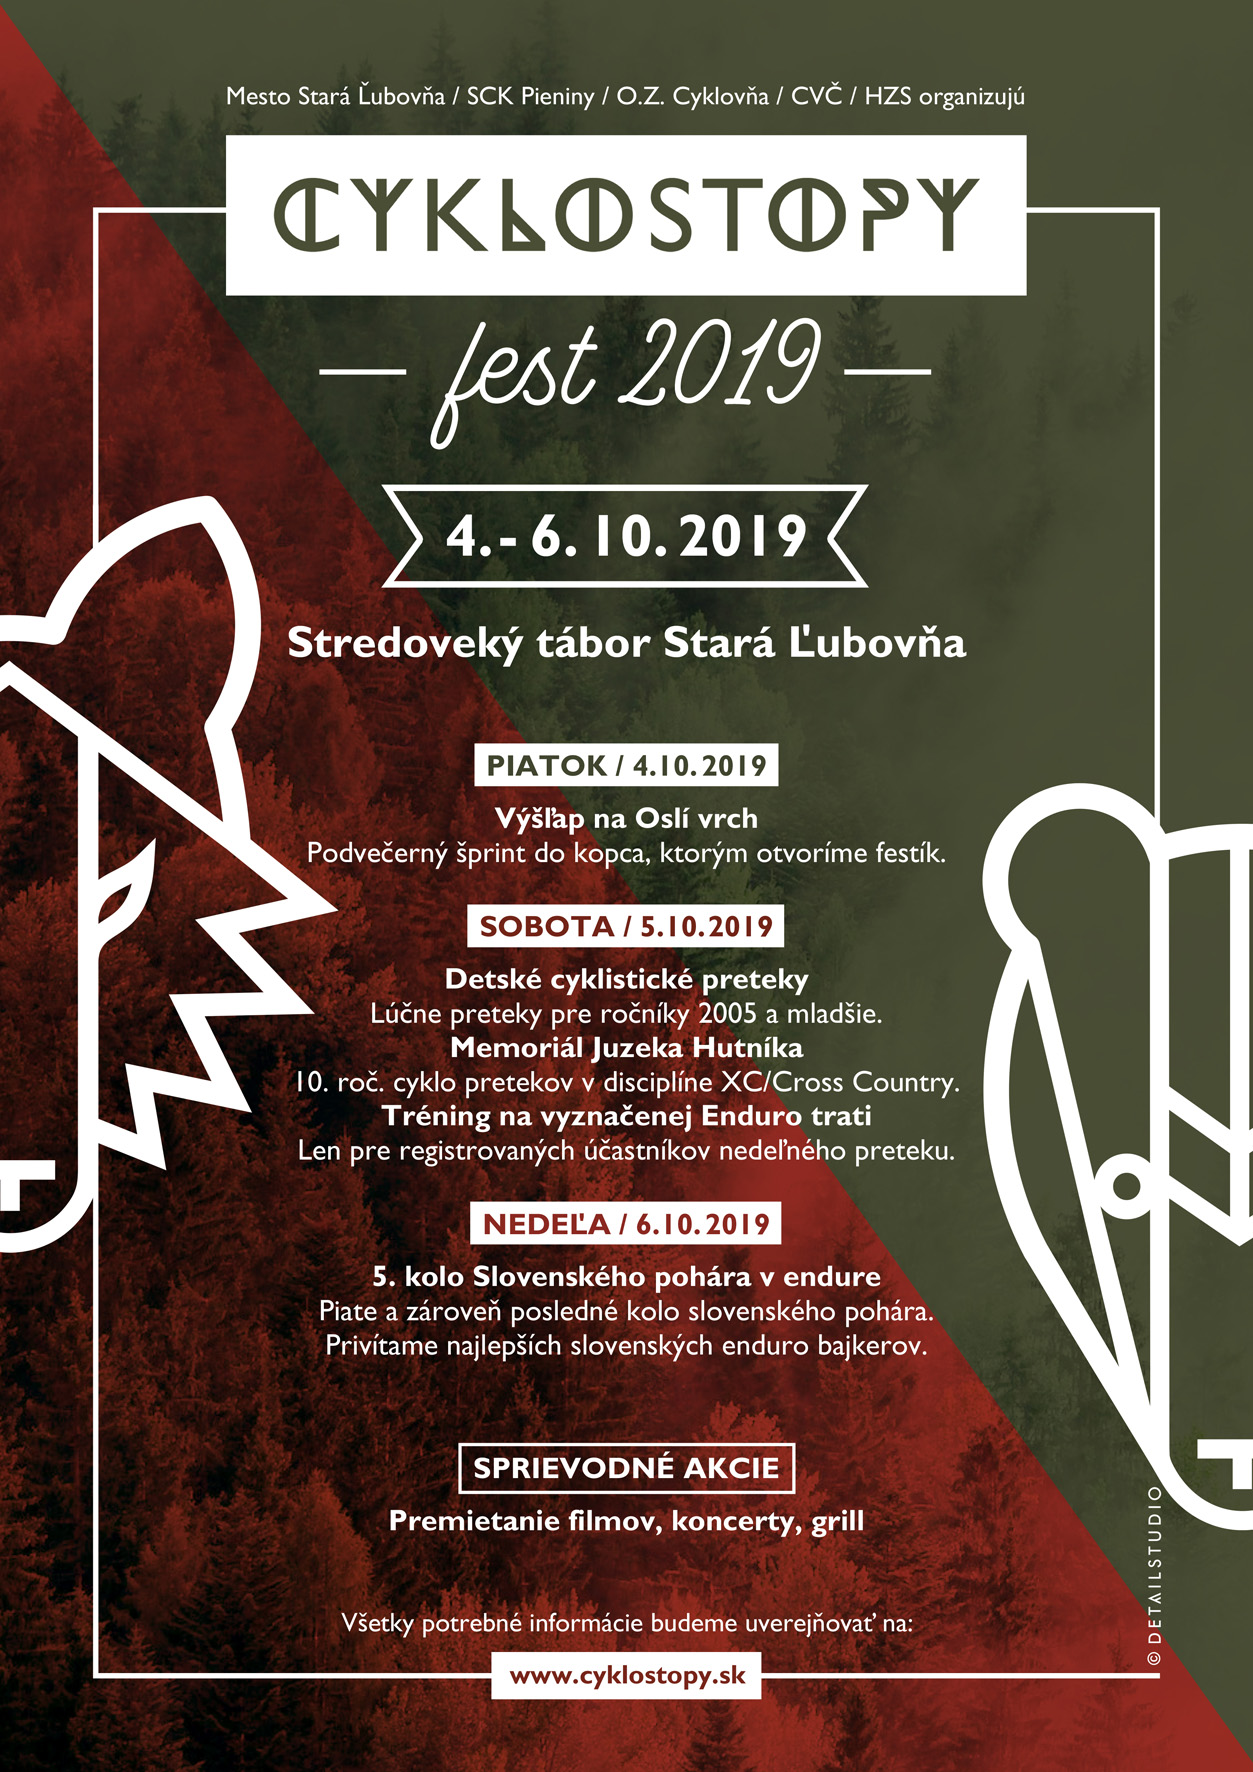 Cyklostopy fest 2019 Stará Ľubovňa 